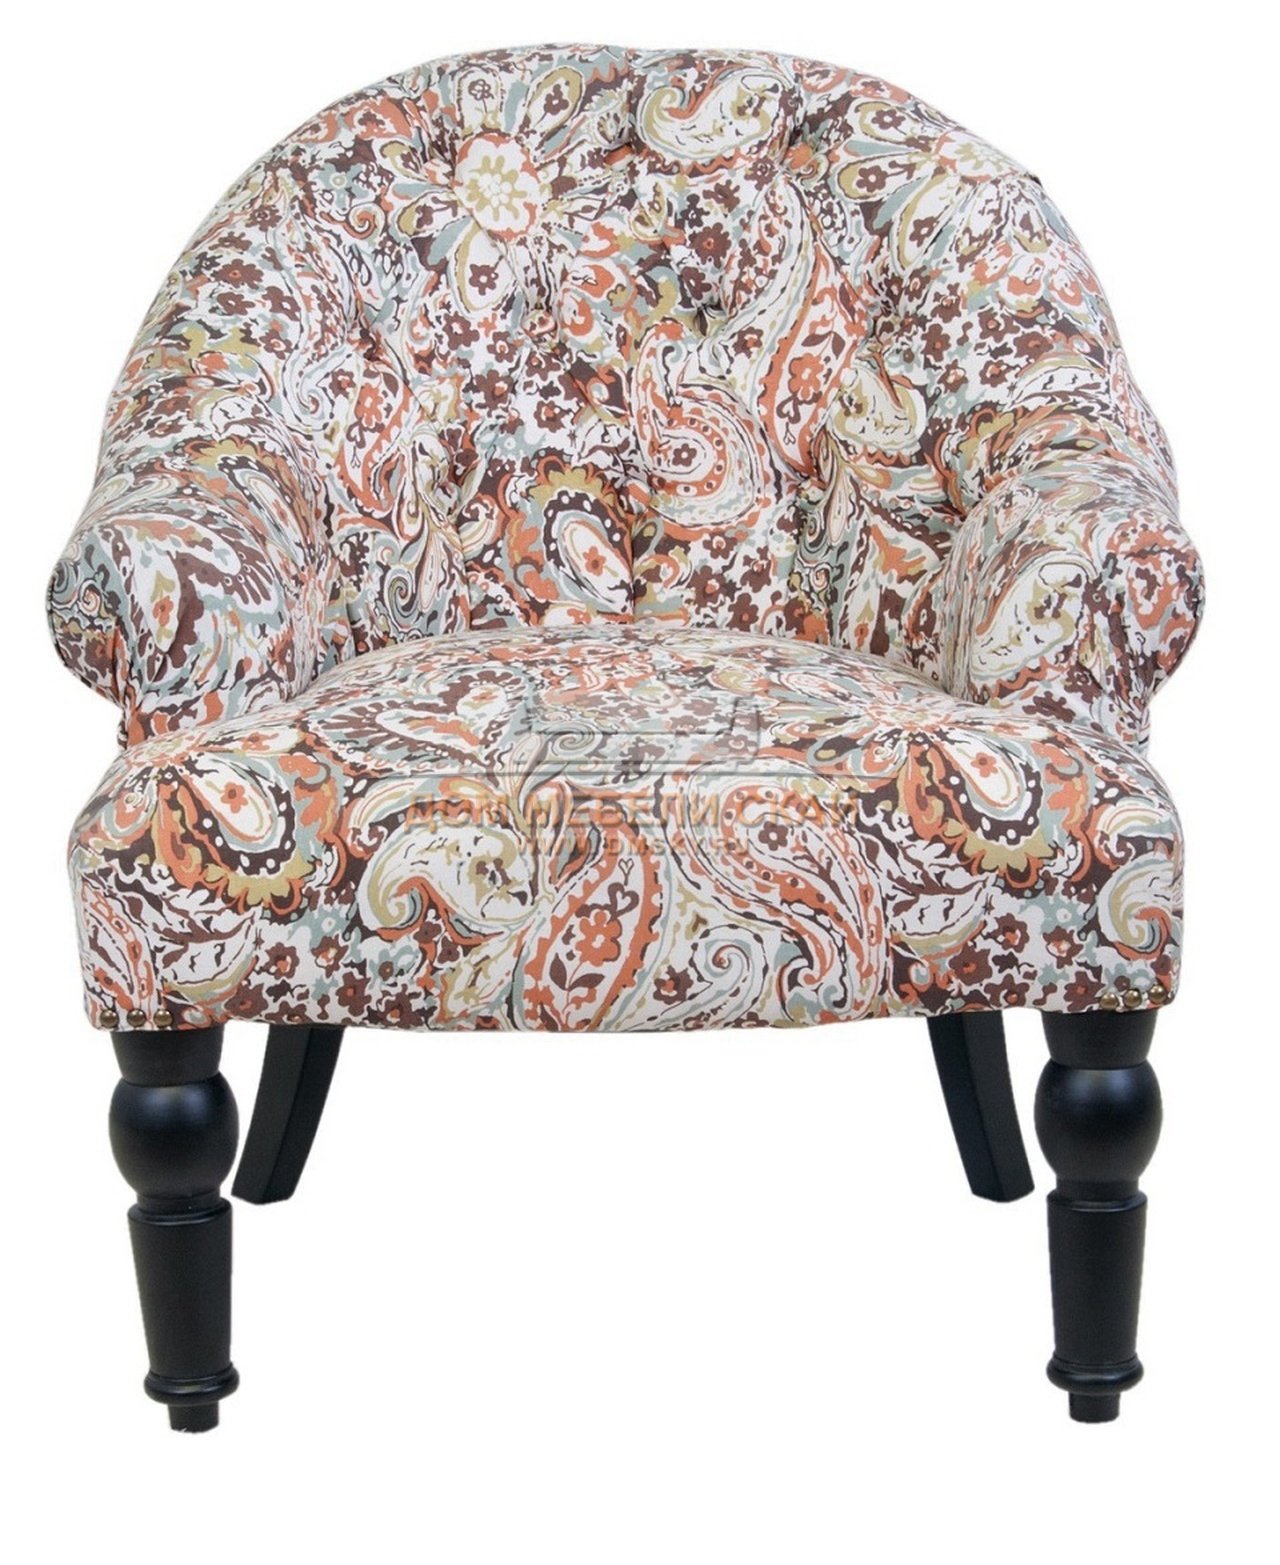 C1886 c 3072 ru. Кресло Mak-Interior. Низкое кресло. Кресла низкие мягкие. Кресло с цветочной обивкой.